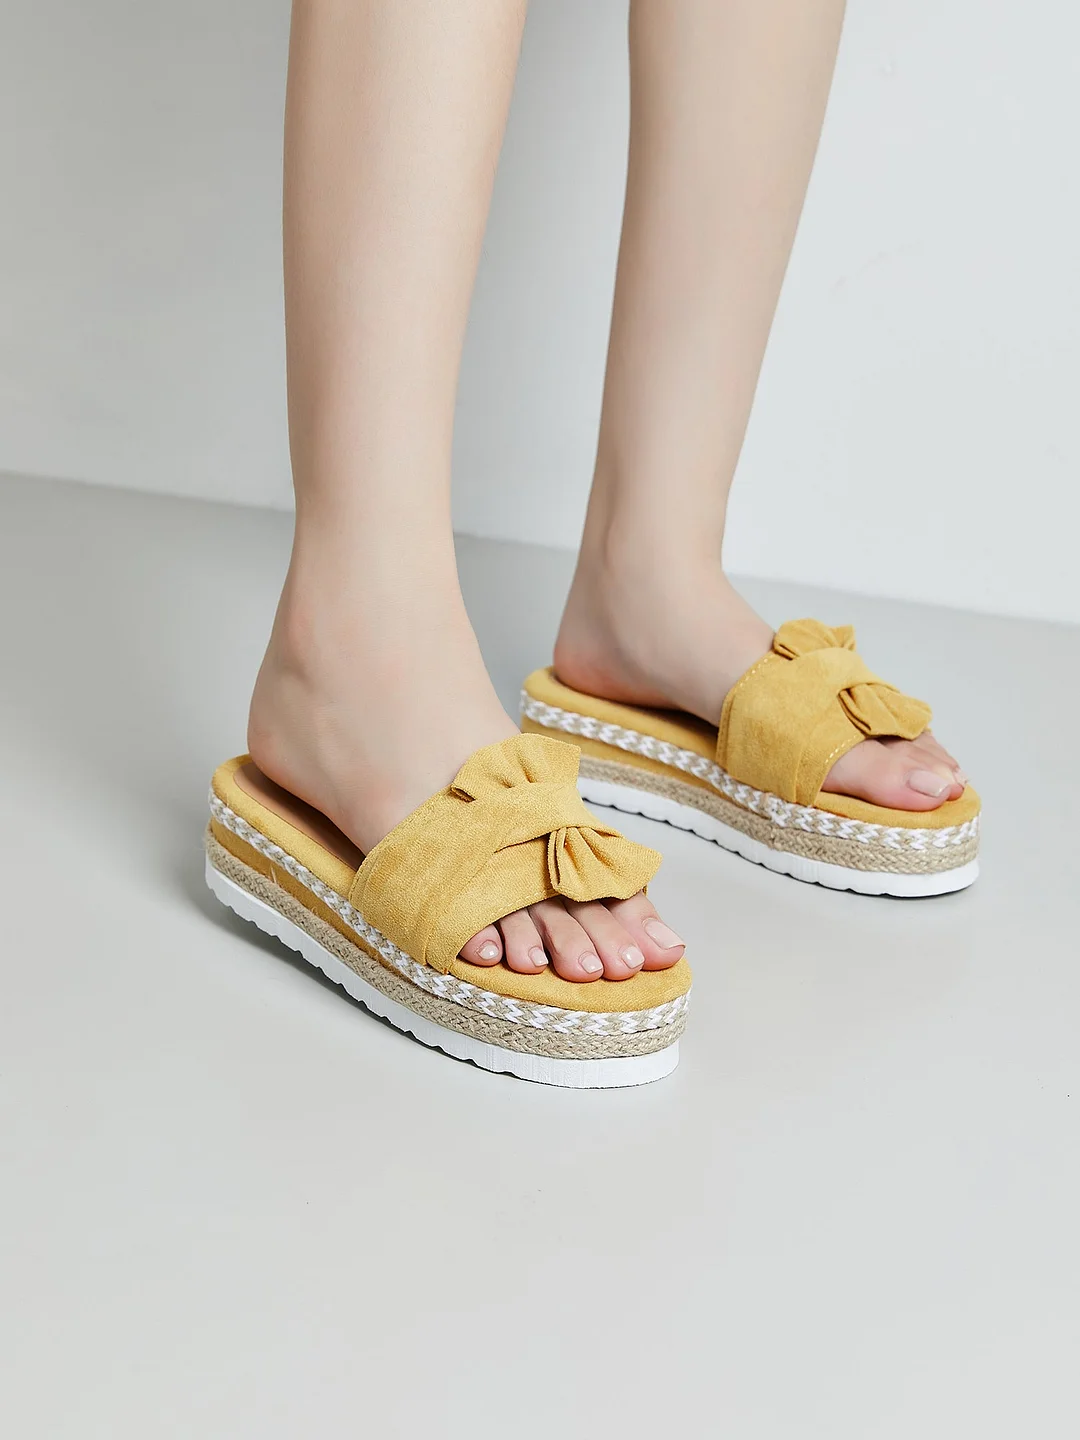 Ladies Shoes Womens Sandals Heels Platform High Wedge Slippers